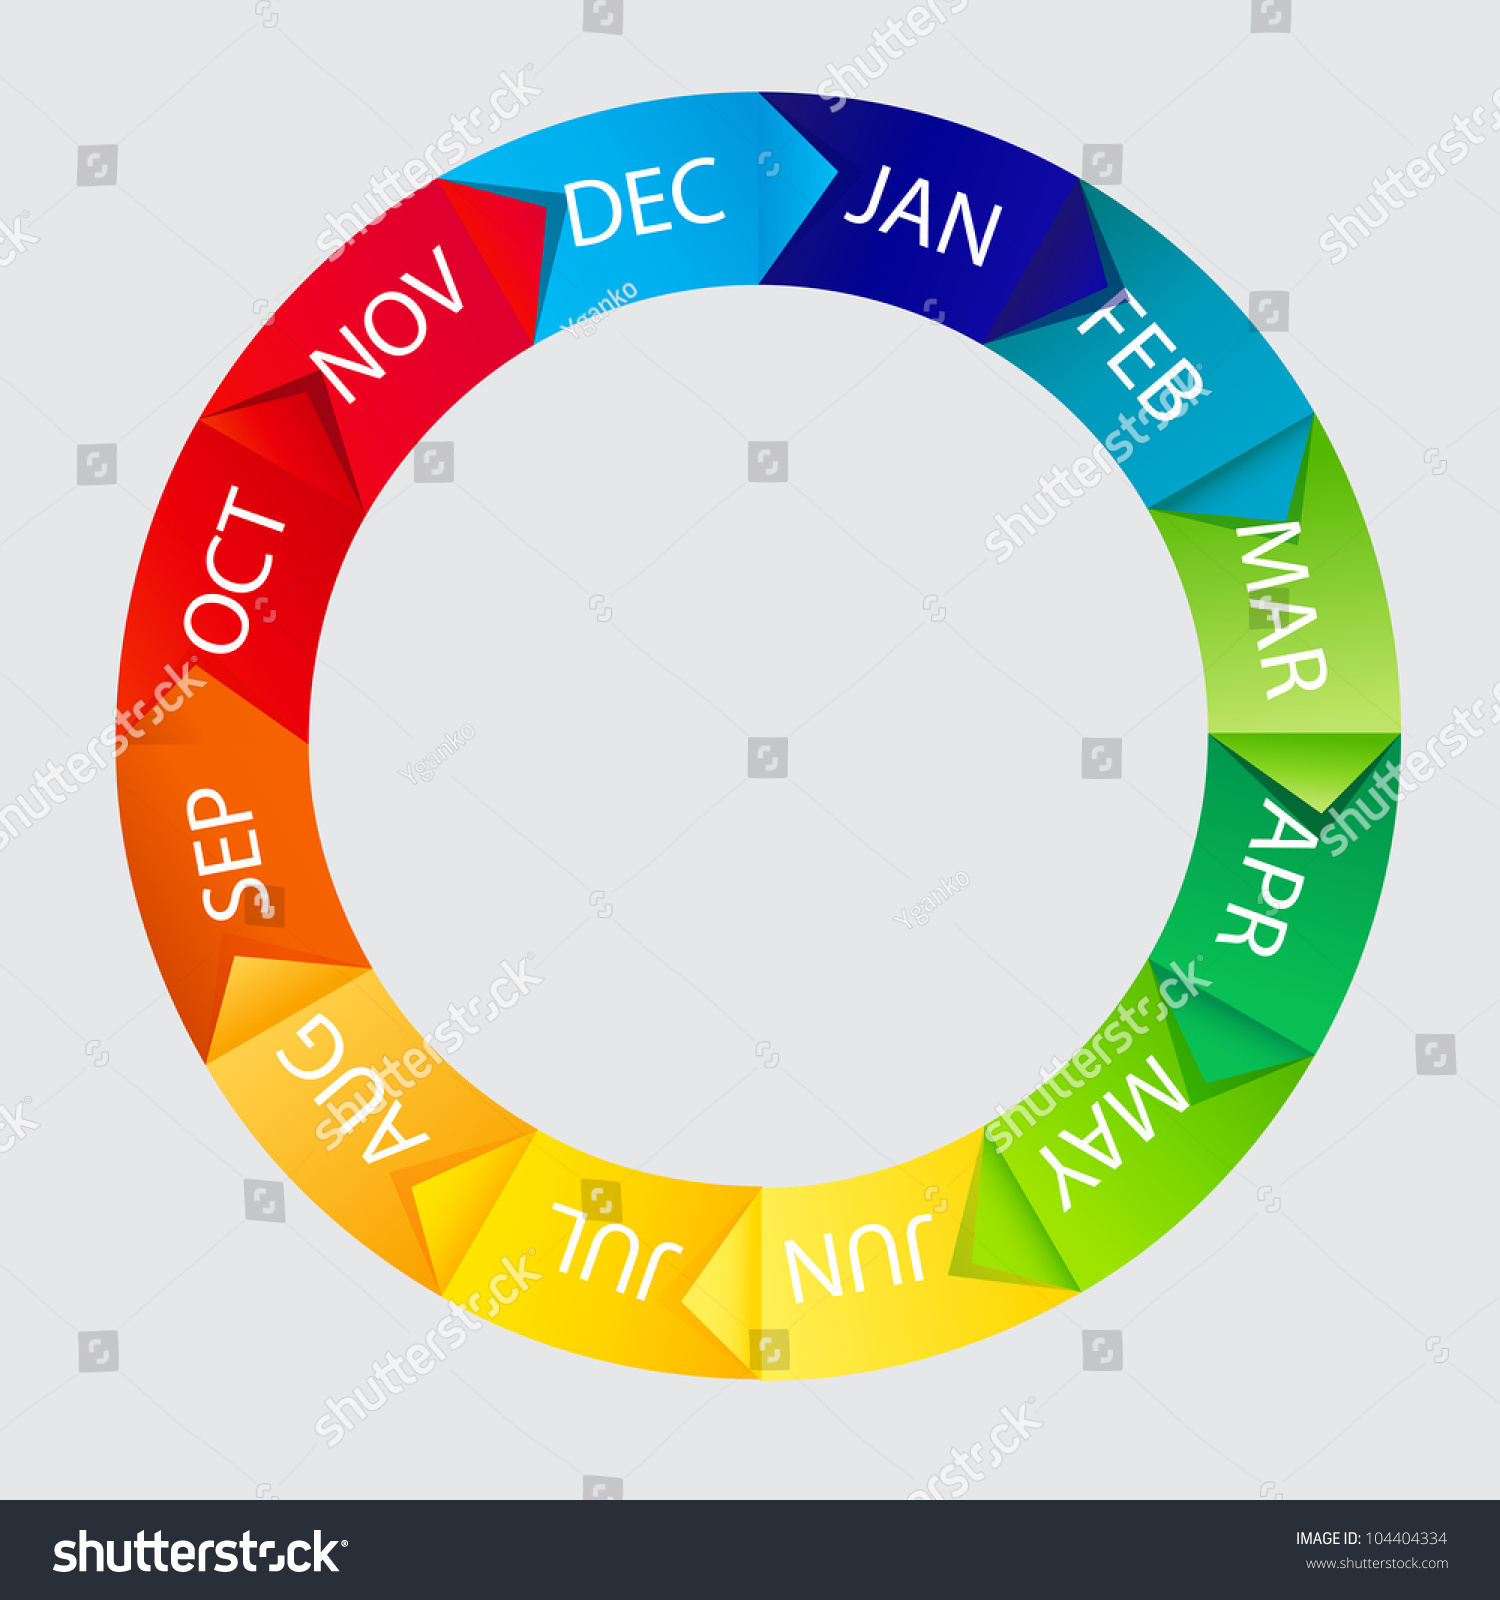 2,808 Monthly Calendar Wheel Images, Stock Photos & Vectors Shutterstock